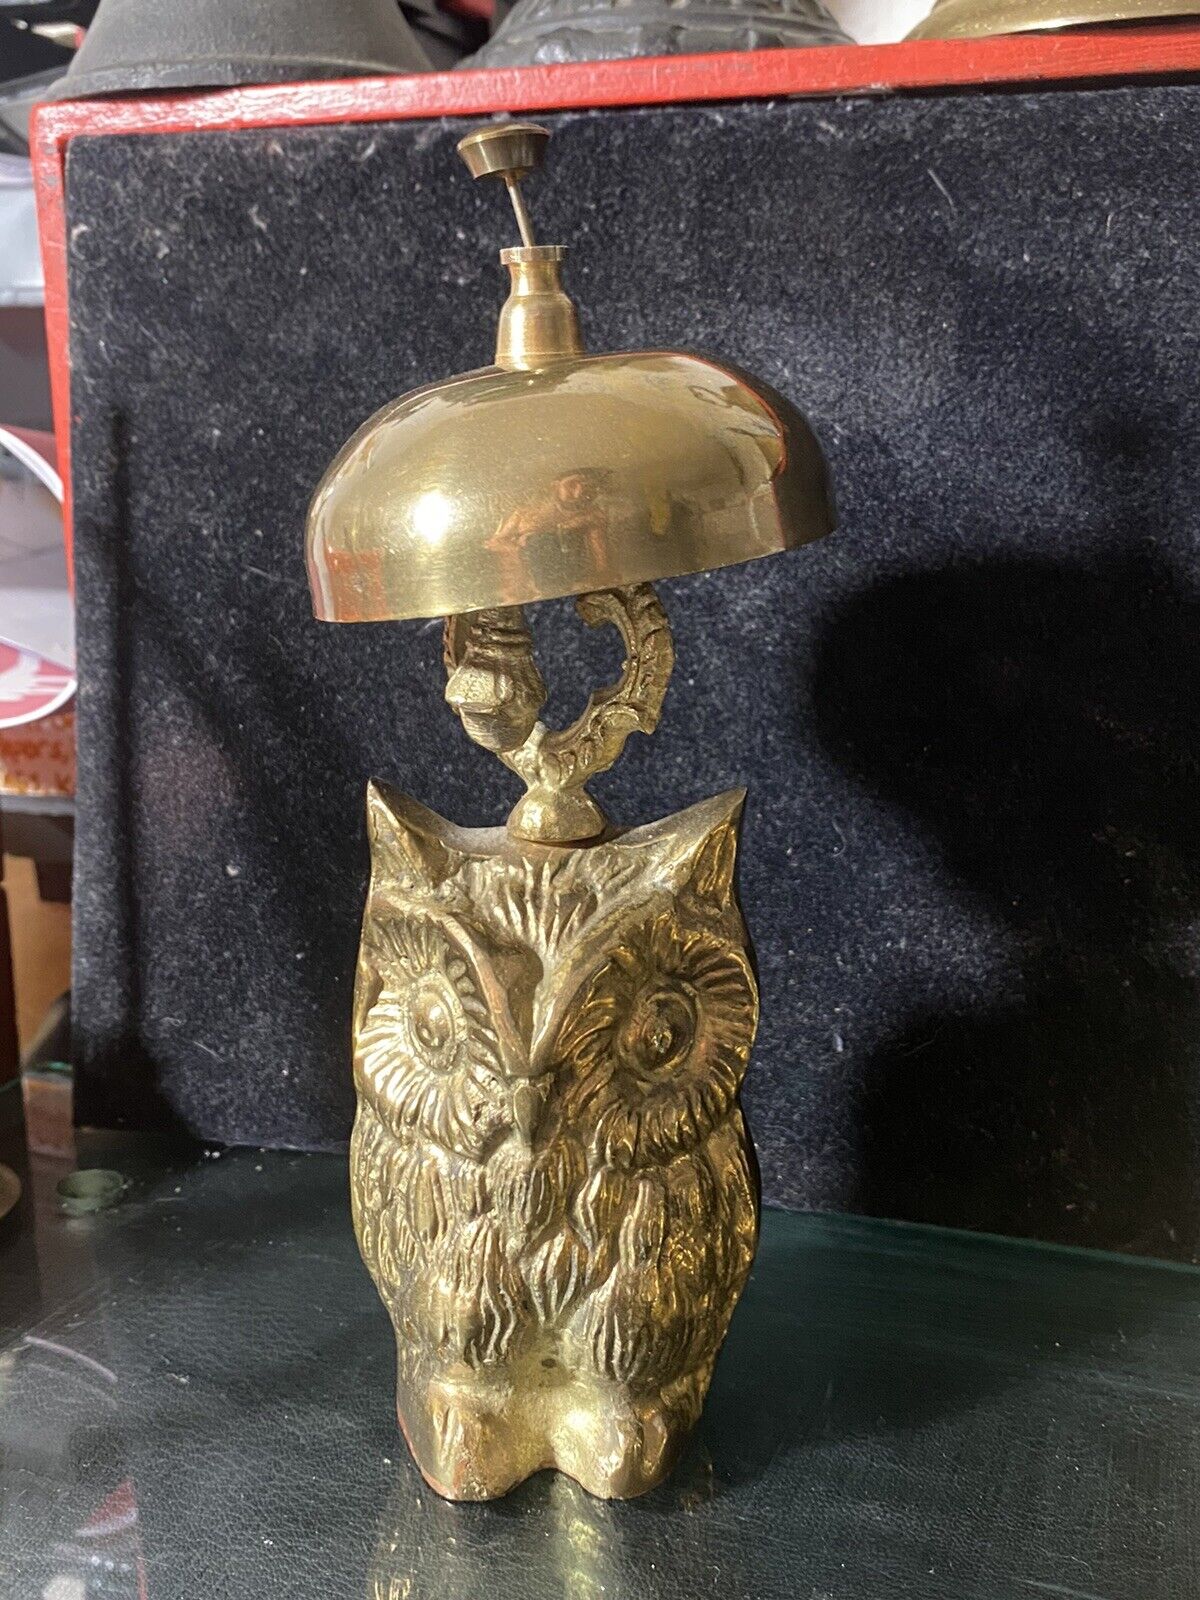 Antique Brass Ornate Hotel Front Counter Desk Bell Owel Shaped